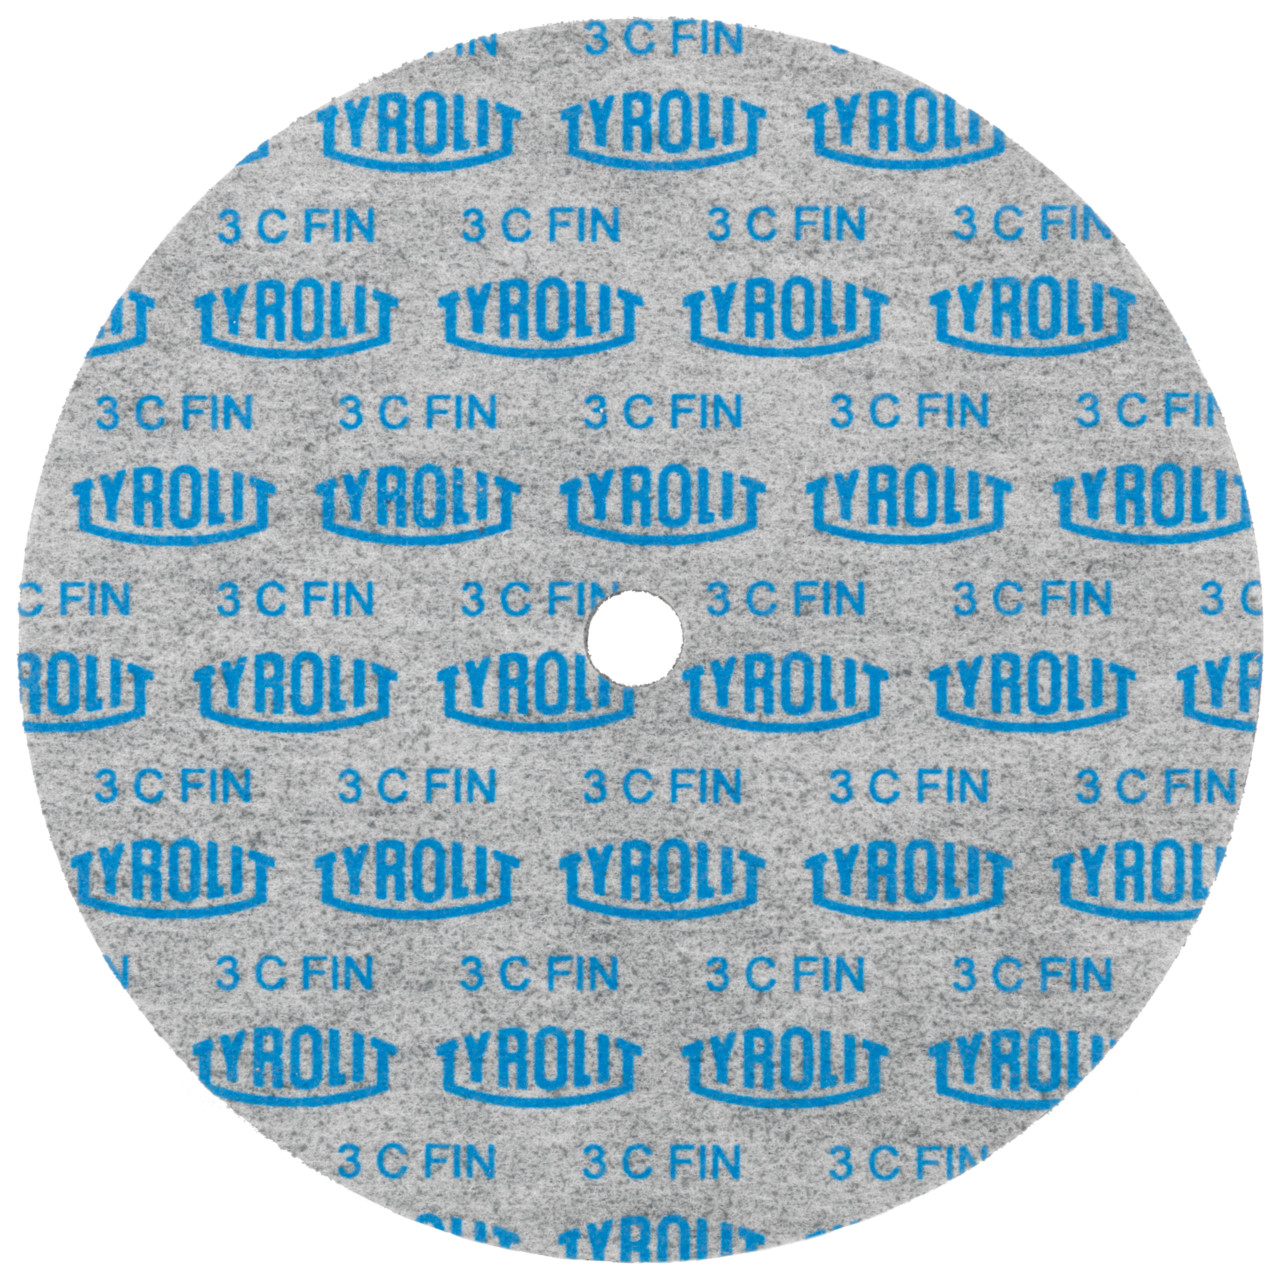 TYROLIT Discos compactos prensados DxDxH 152x25x25,4 Inserto universal, 8 A GROB, forma: 1, Art. 34190310